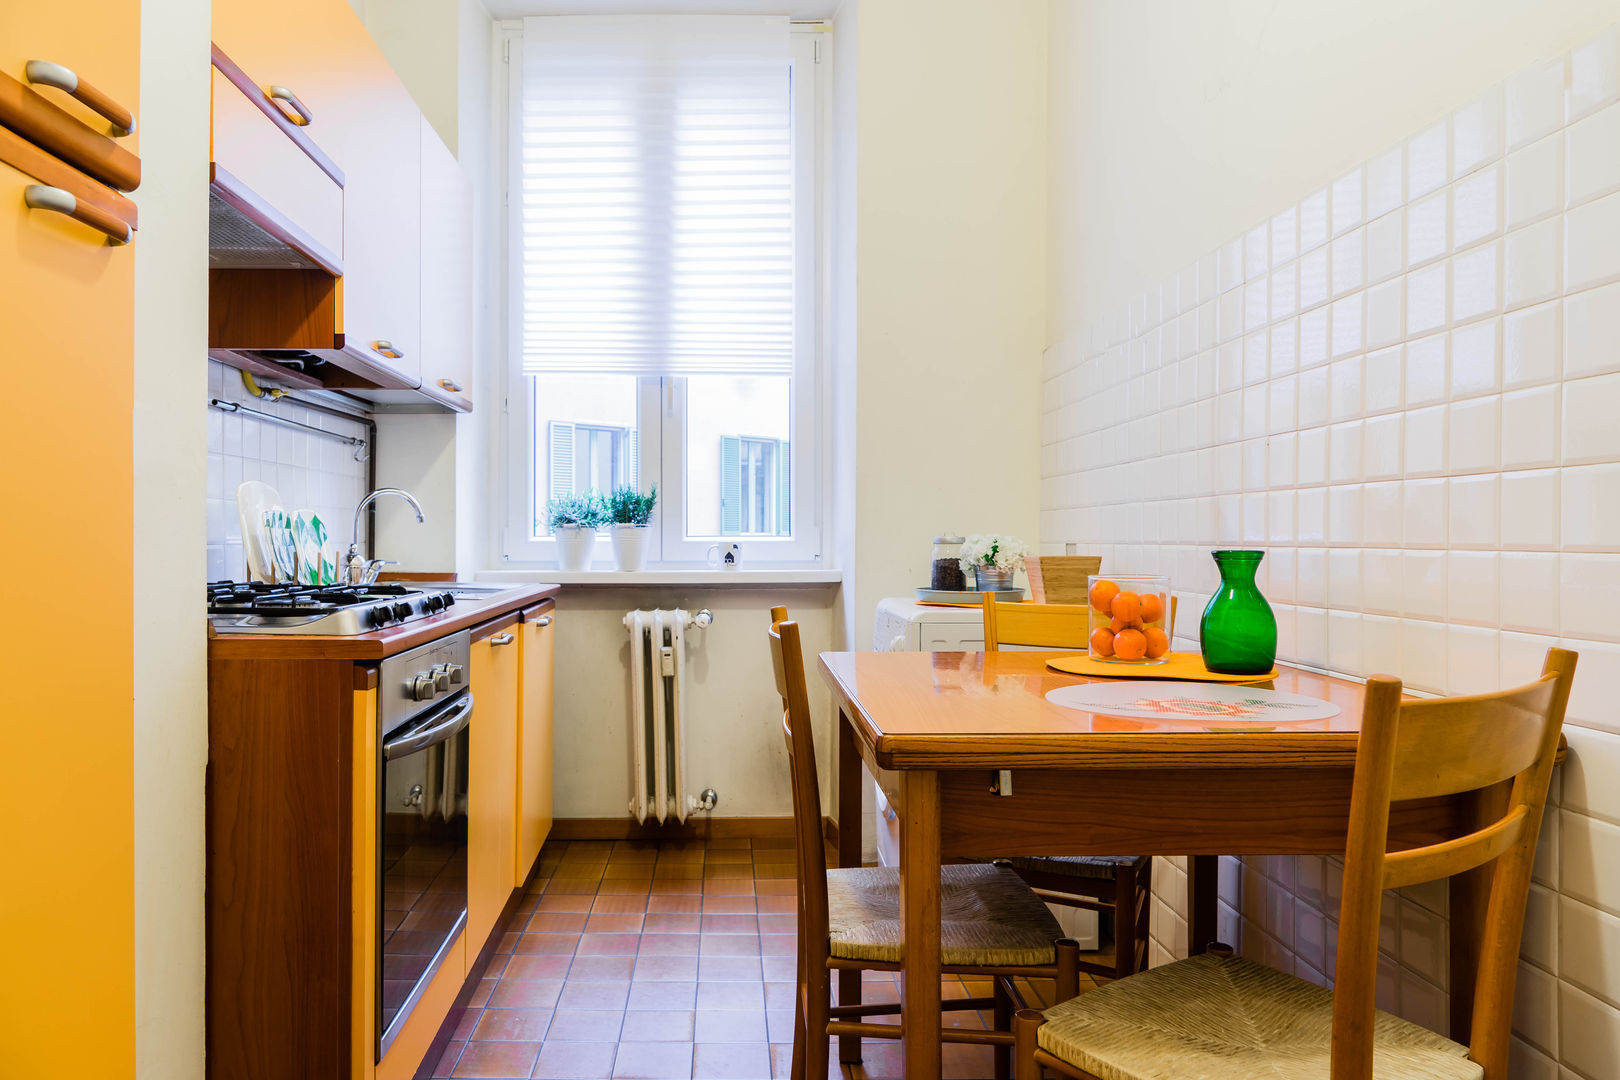 Le stanze di Alice, Francesca Greco - HOME|Philosophy Francesca Greco - HOME|Philosophy Classic style kitchen